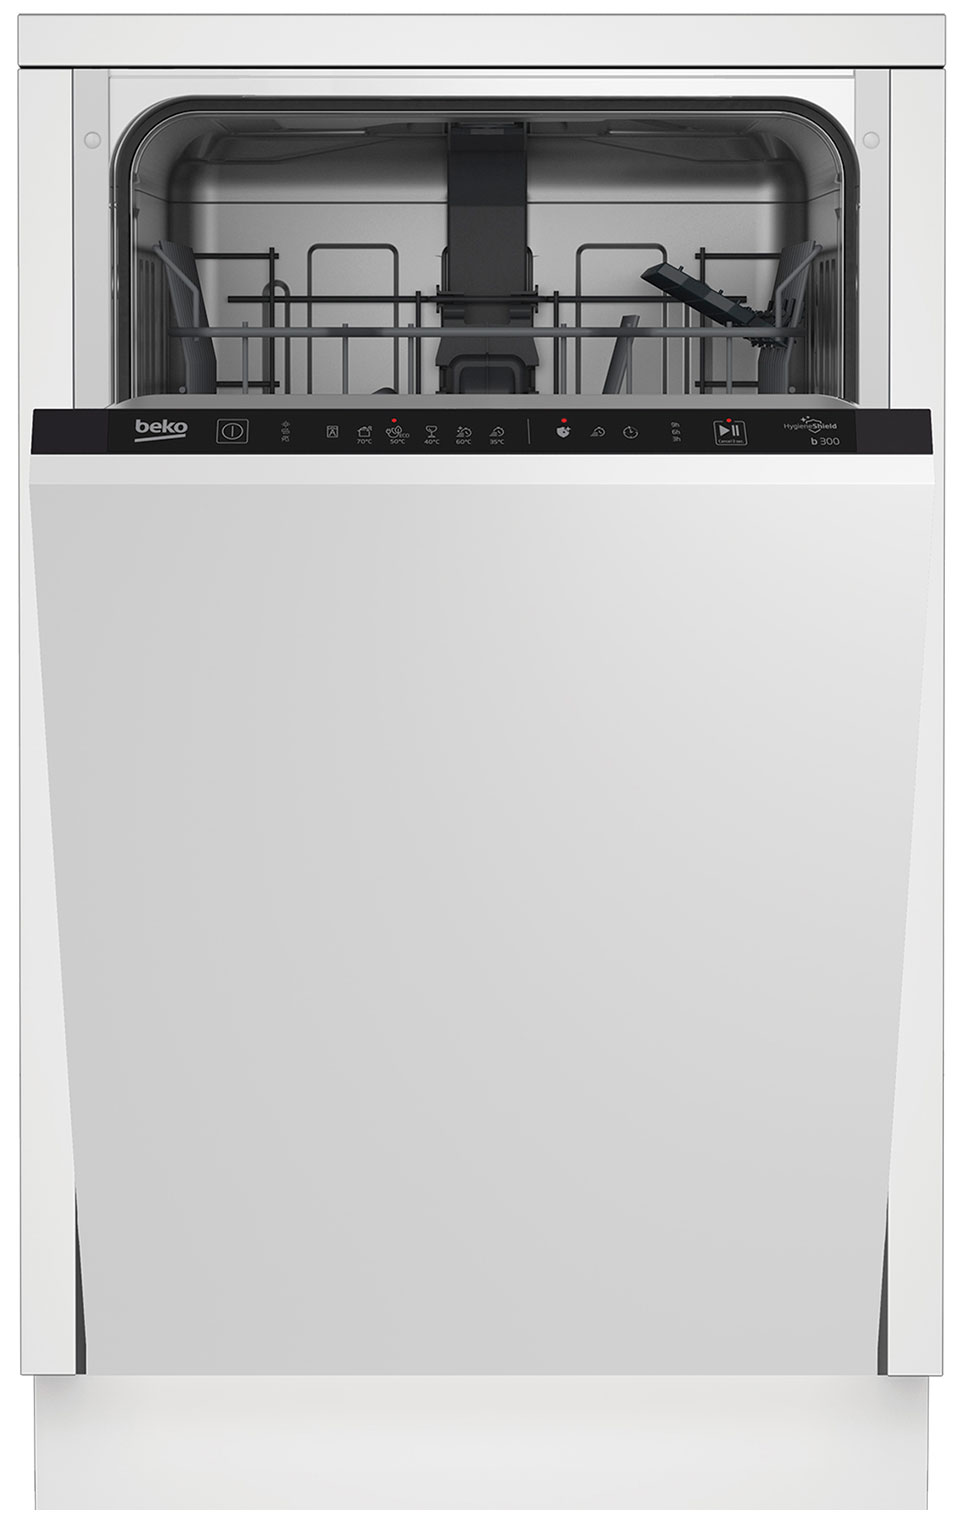 Встраиваемая посудомоечная машина Beko BDIS16020 встраиваемая посудомоечная машина beko bdin16420